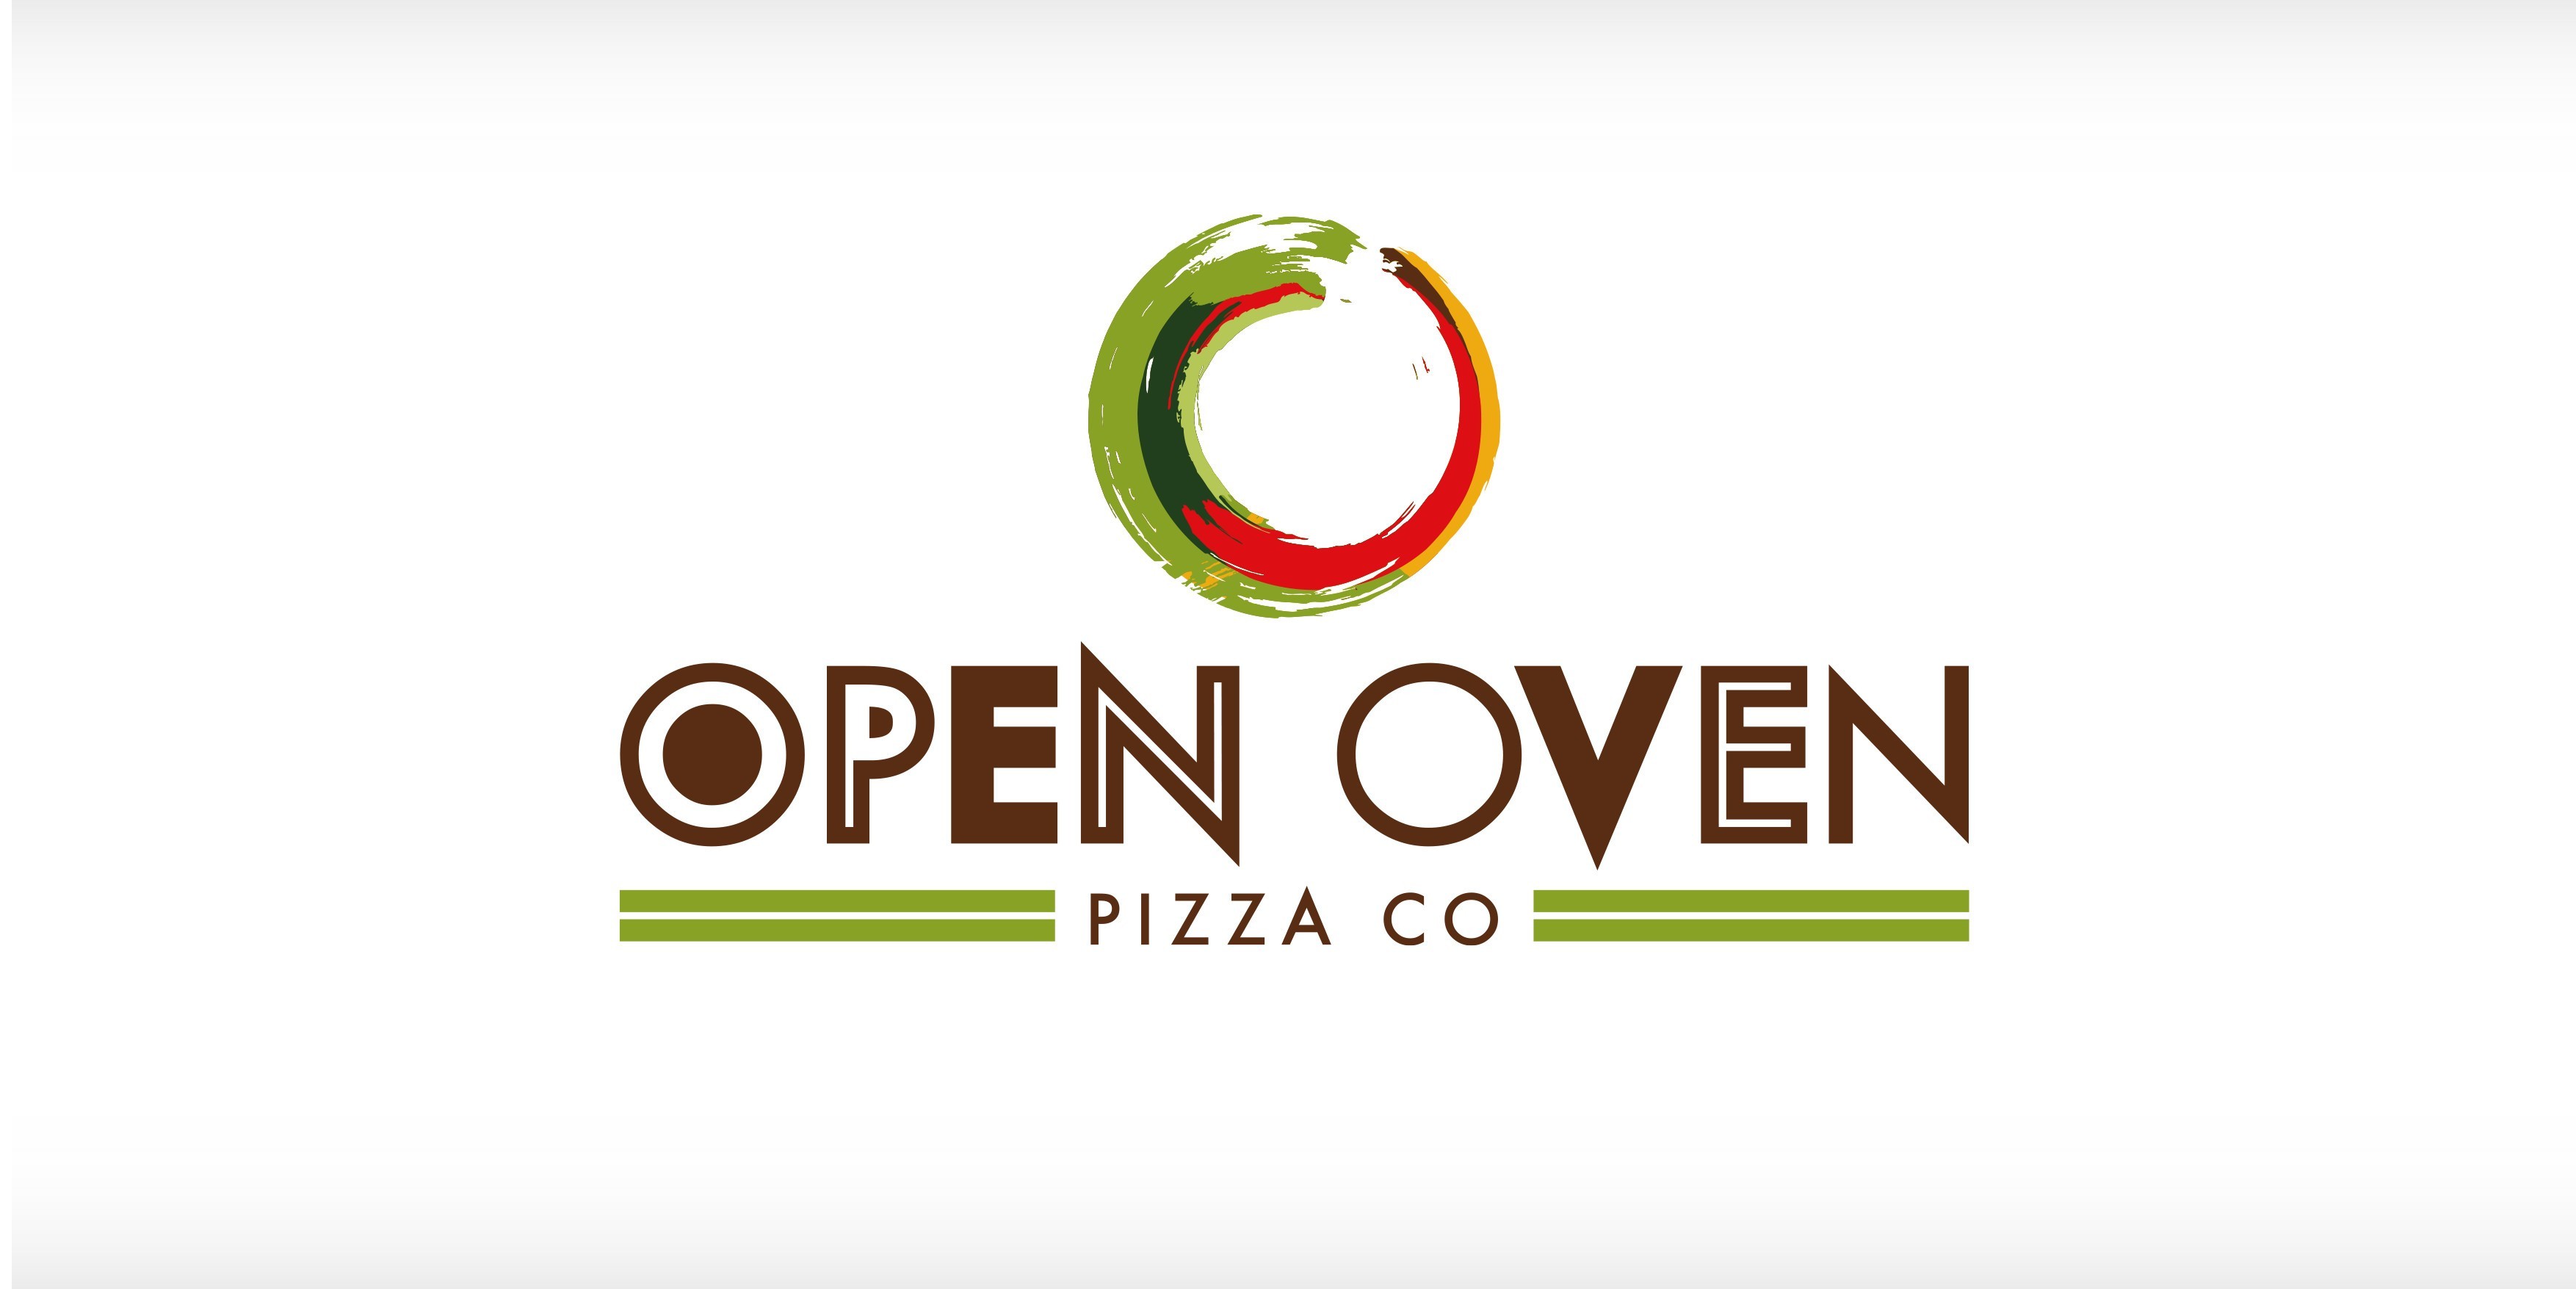 Open oven branding